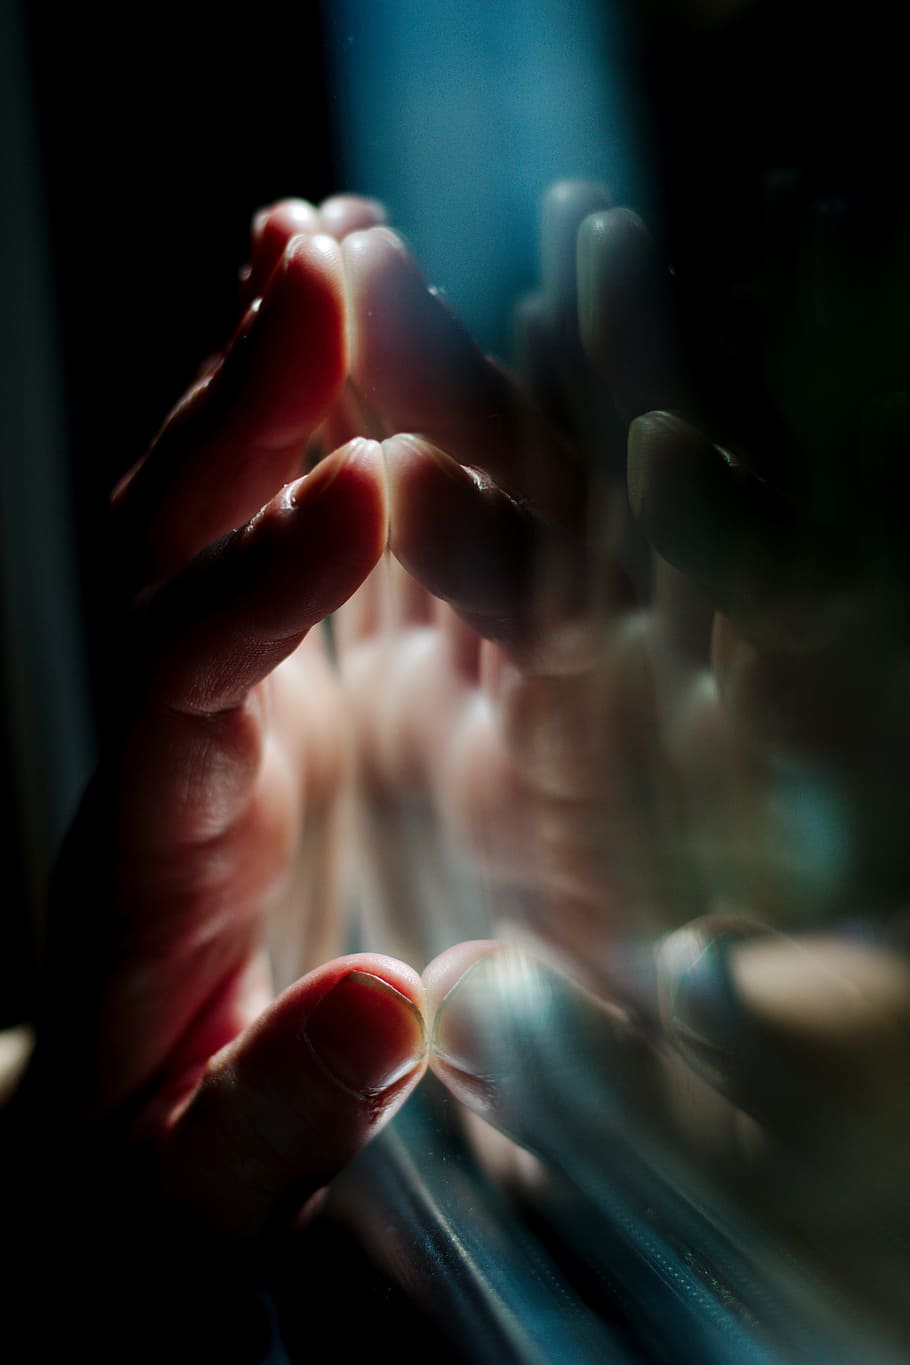 mano, palma, difuminar, noche, luz, ventana, vaso, reflexión, mano humana, parte del cuerpo humano